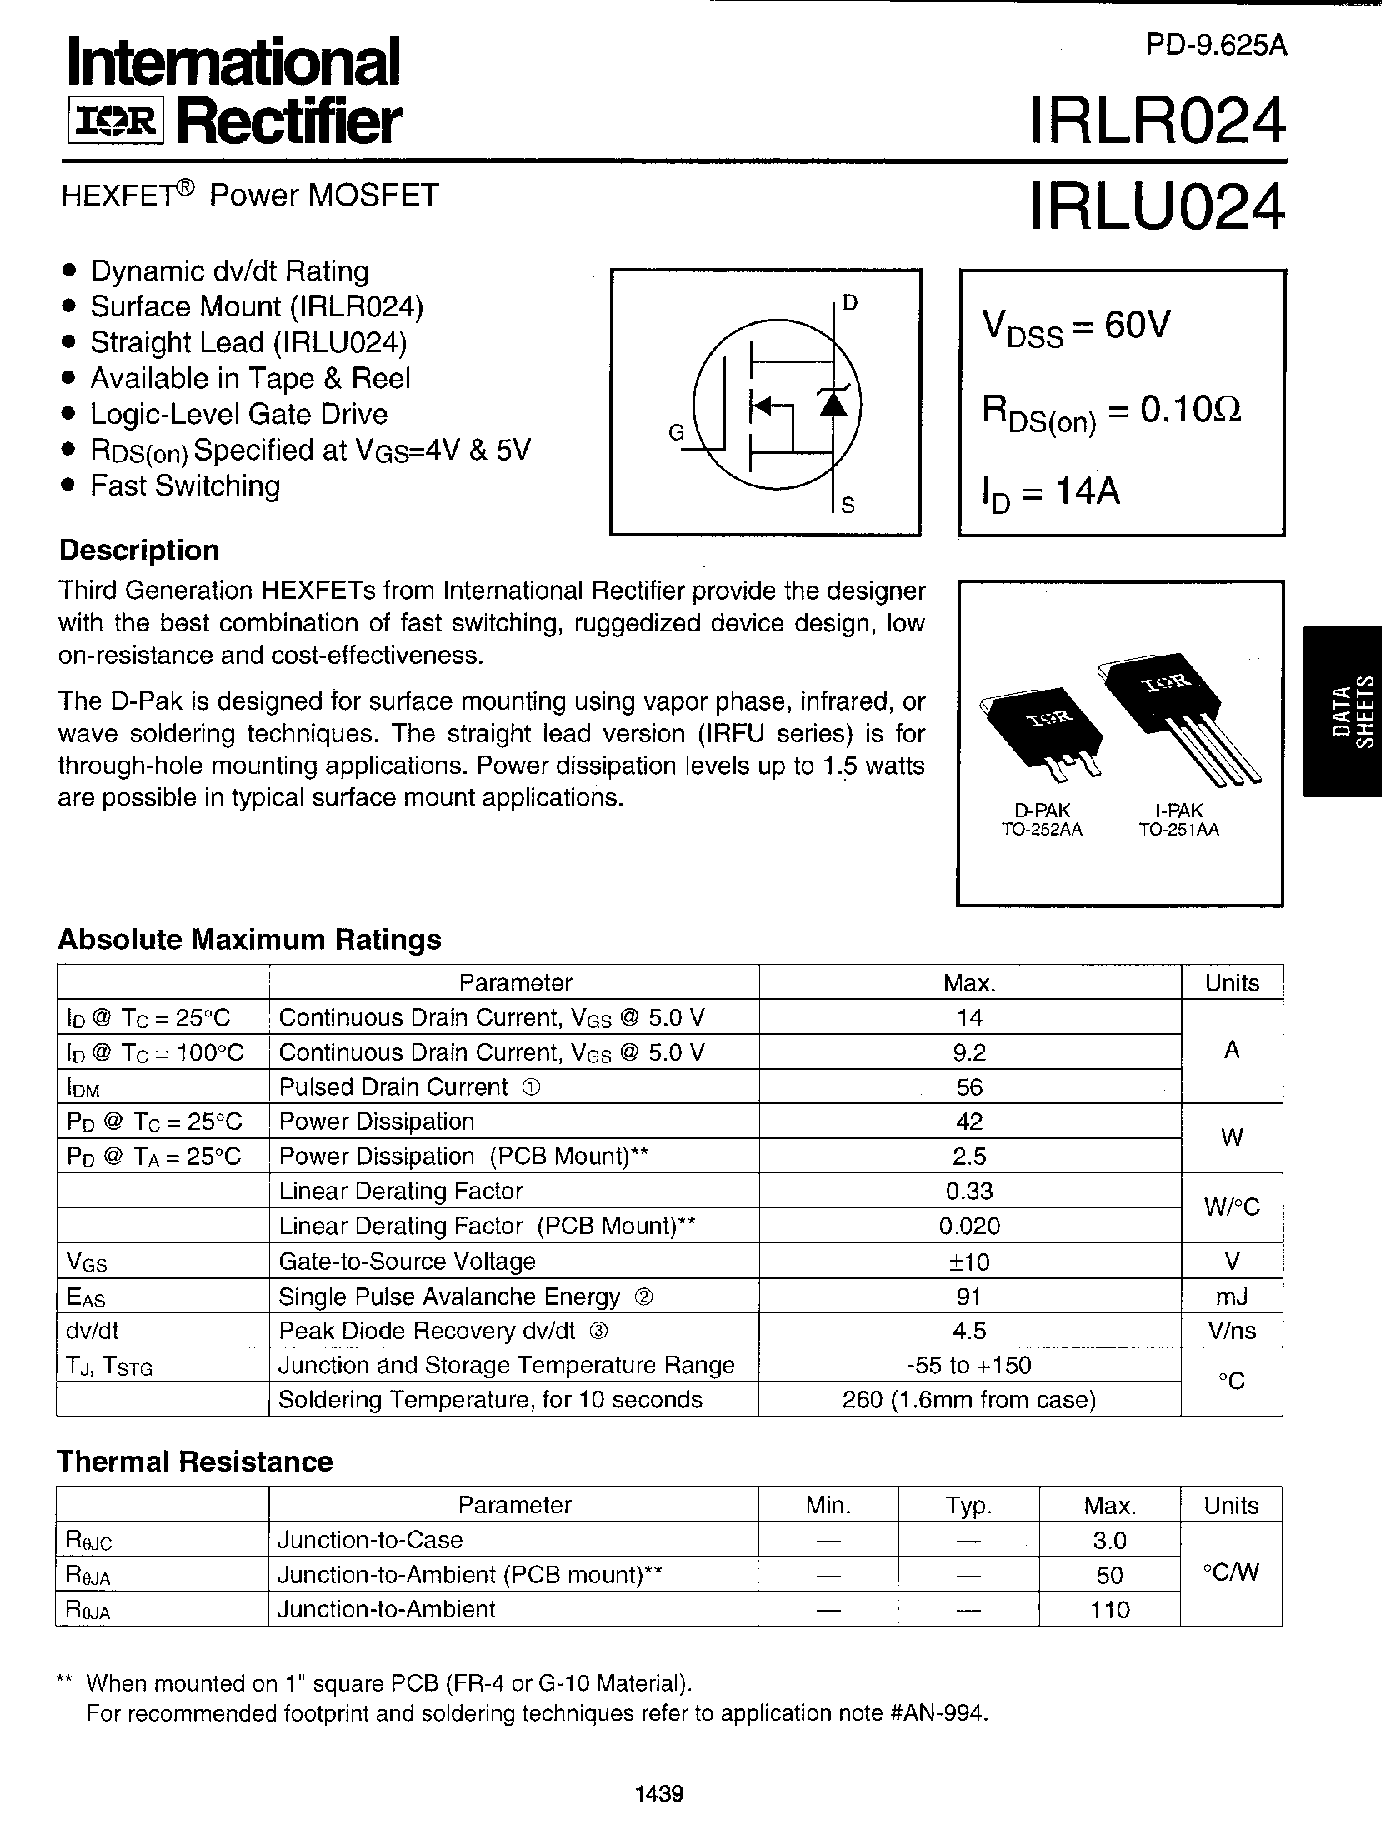 Datasheet IRLR024 - (IRLU/R024) Power MOSFET page 1